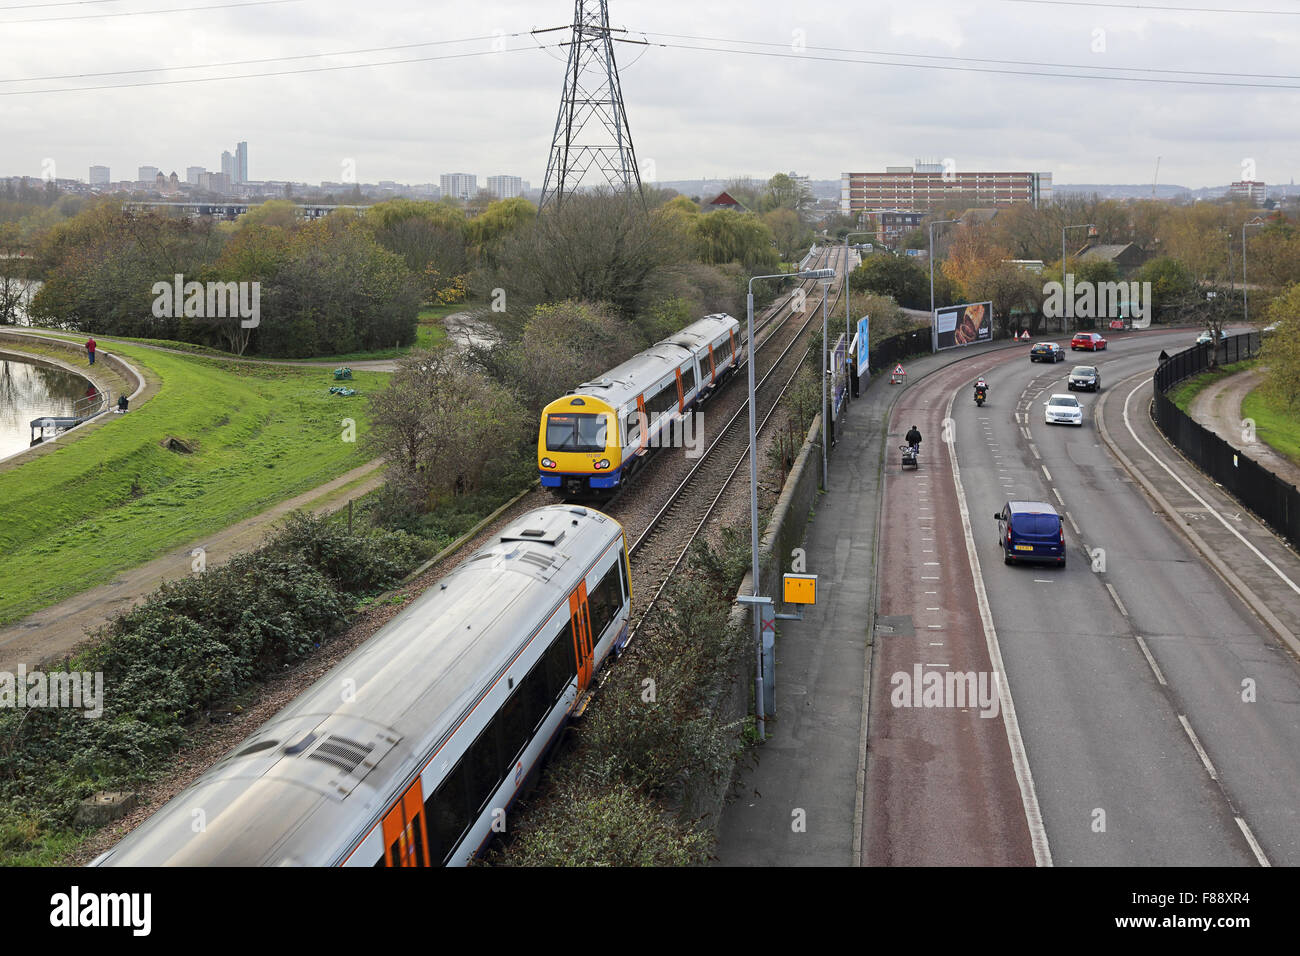 Vista di Londra Overground linea ferroviaria nel nord di Londra che mostra due treni e la strada adiacente con corsia degli autobus e autovelox Foto Stock